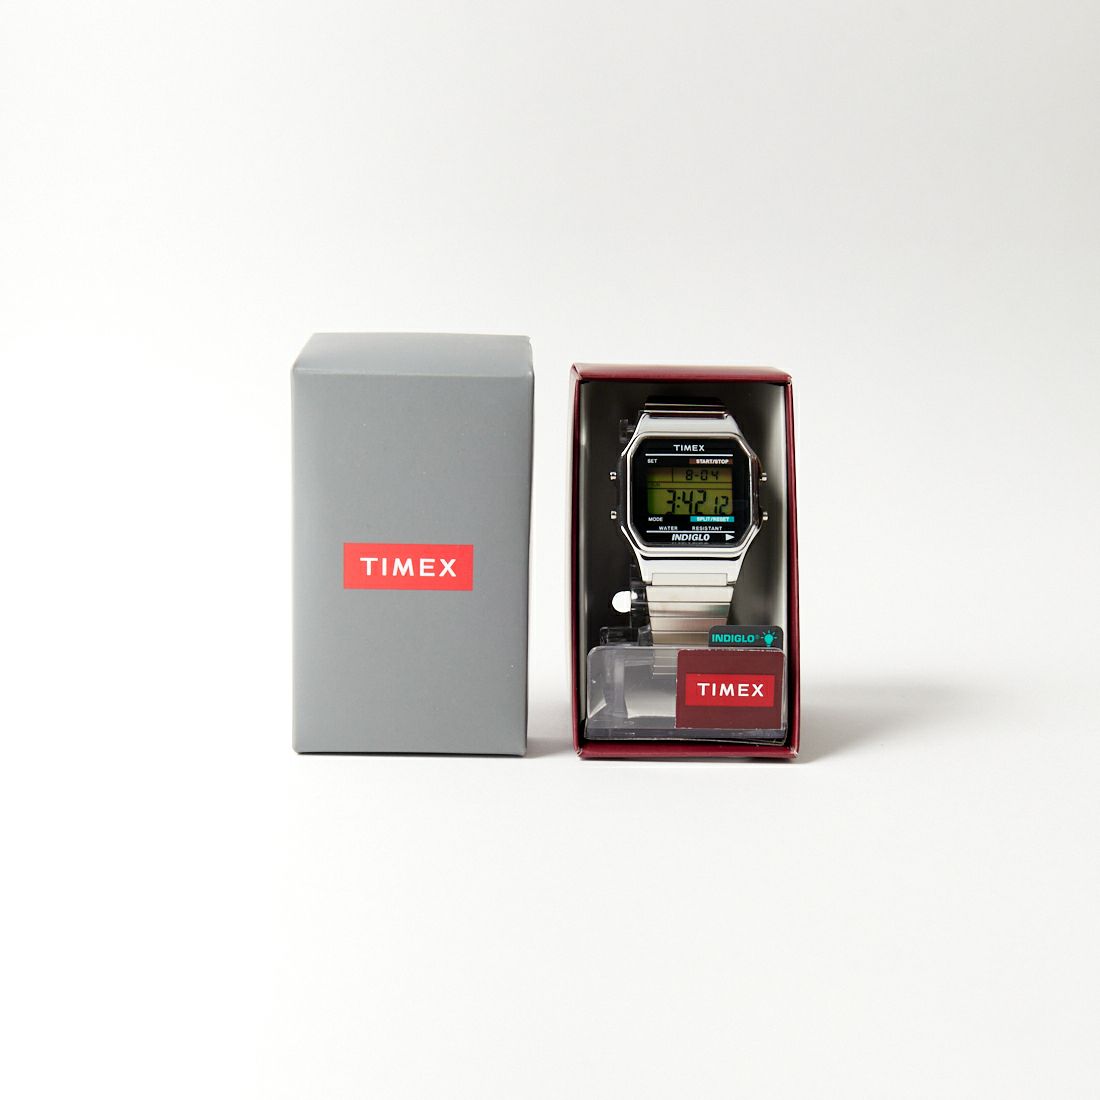 TIMEX [タイメックス] クラシックデジタル シルバー [T78587]